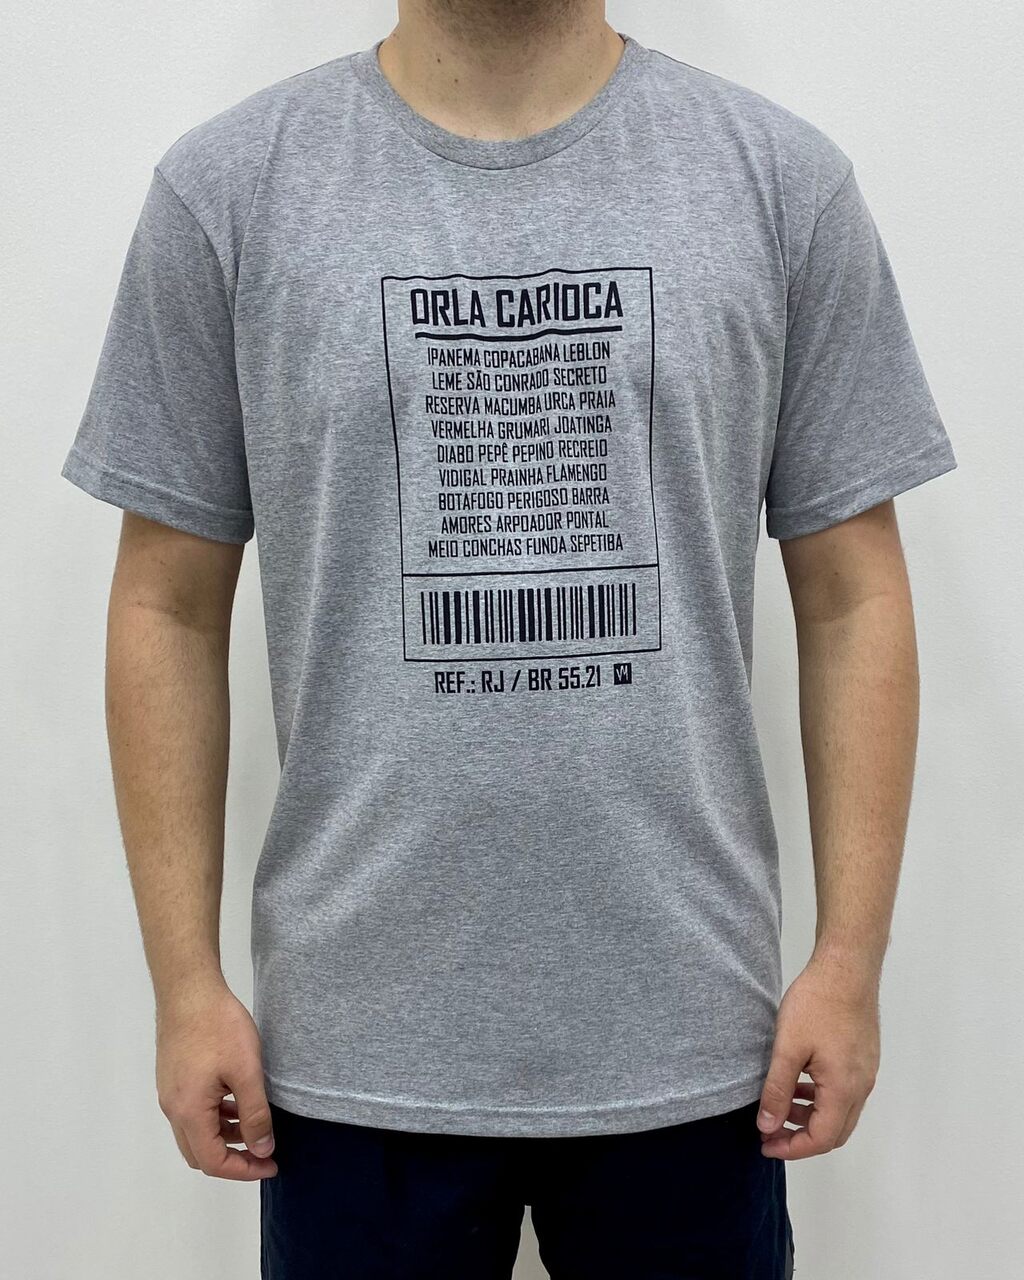 Camiseta Orla Carioca